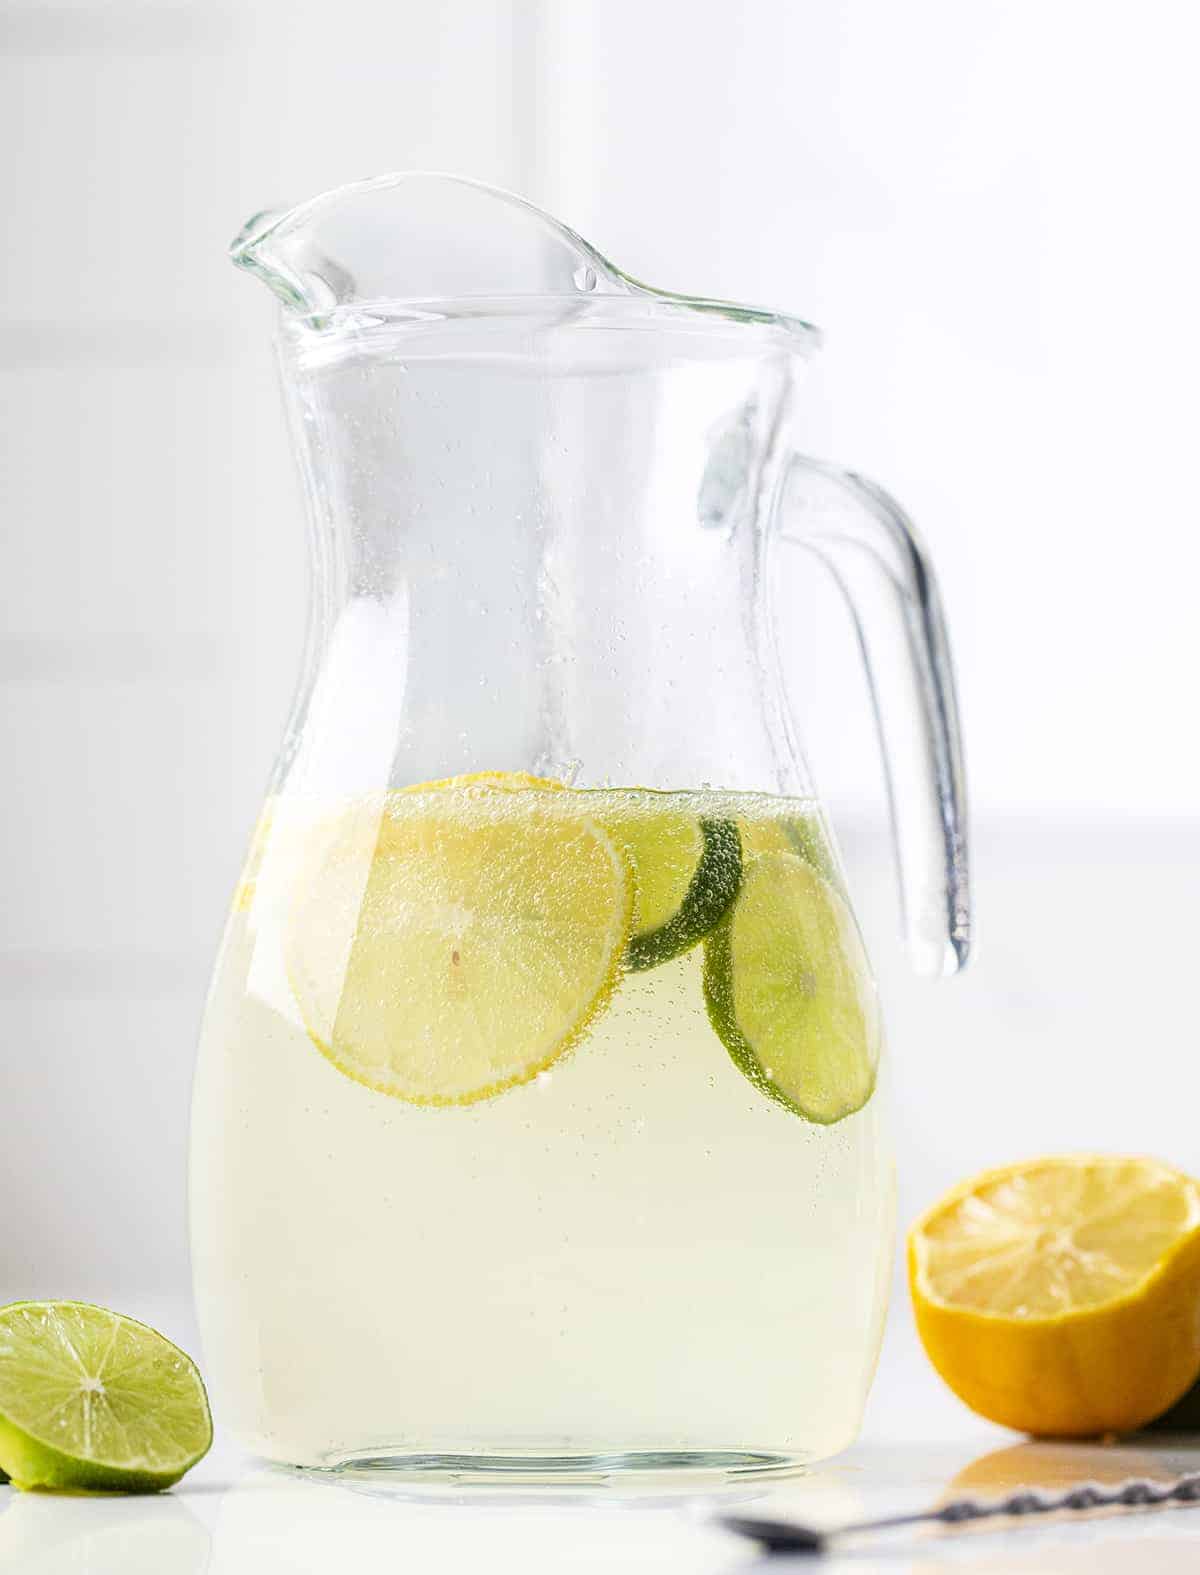 玻璃水罐自制柠檬酸橙苏打水